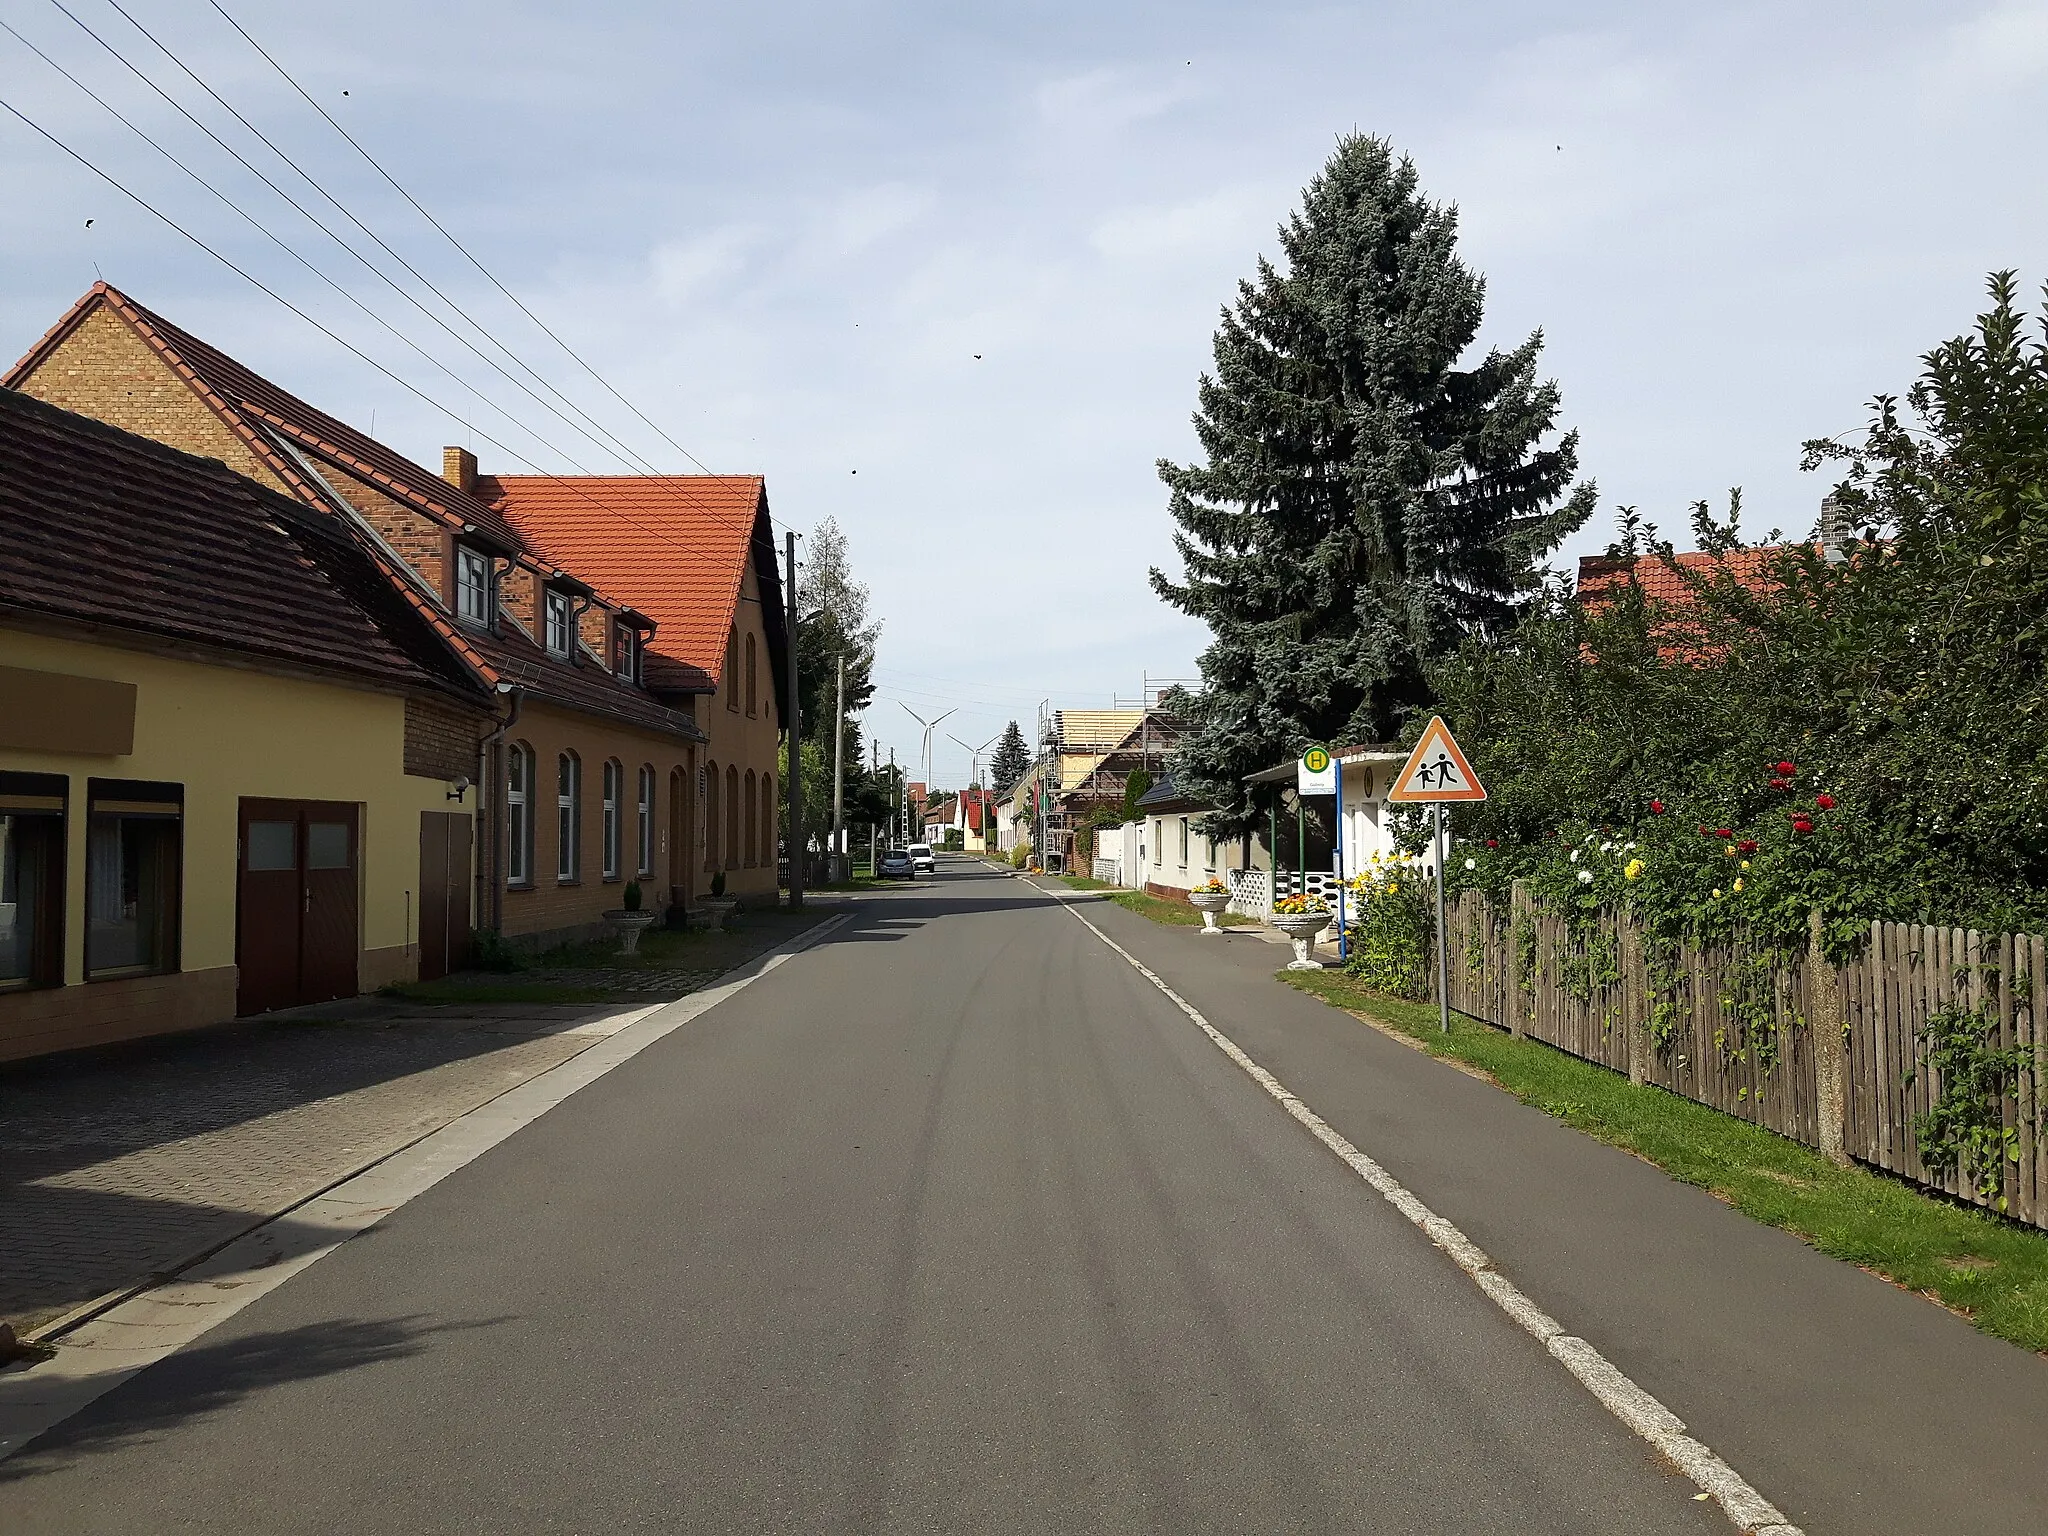 Photo showing: Dorfstraße in Göllnitz, einem Ortsteil der Gemeinde Sallgast im Landkreis Elbe-Elster in Brandenburg, mit Blickrichtung zum Dorfanger.